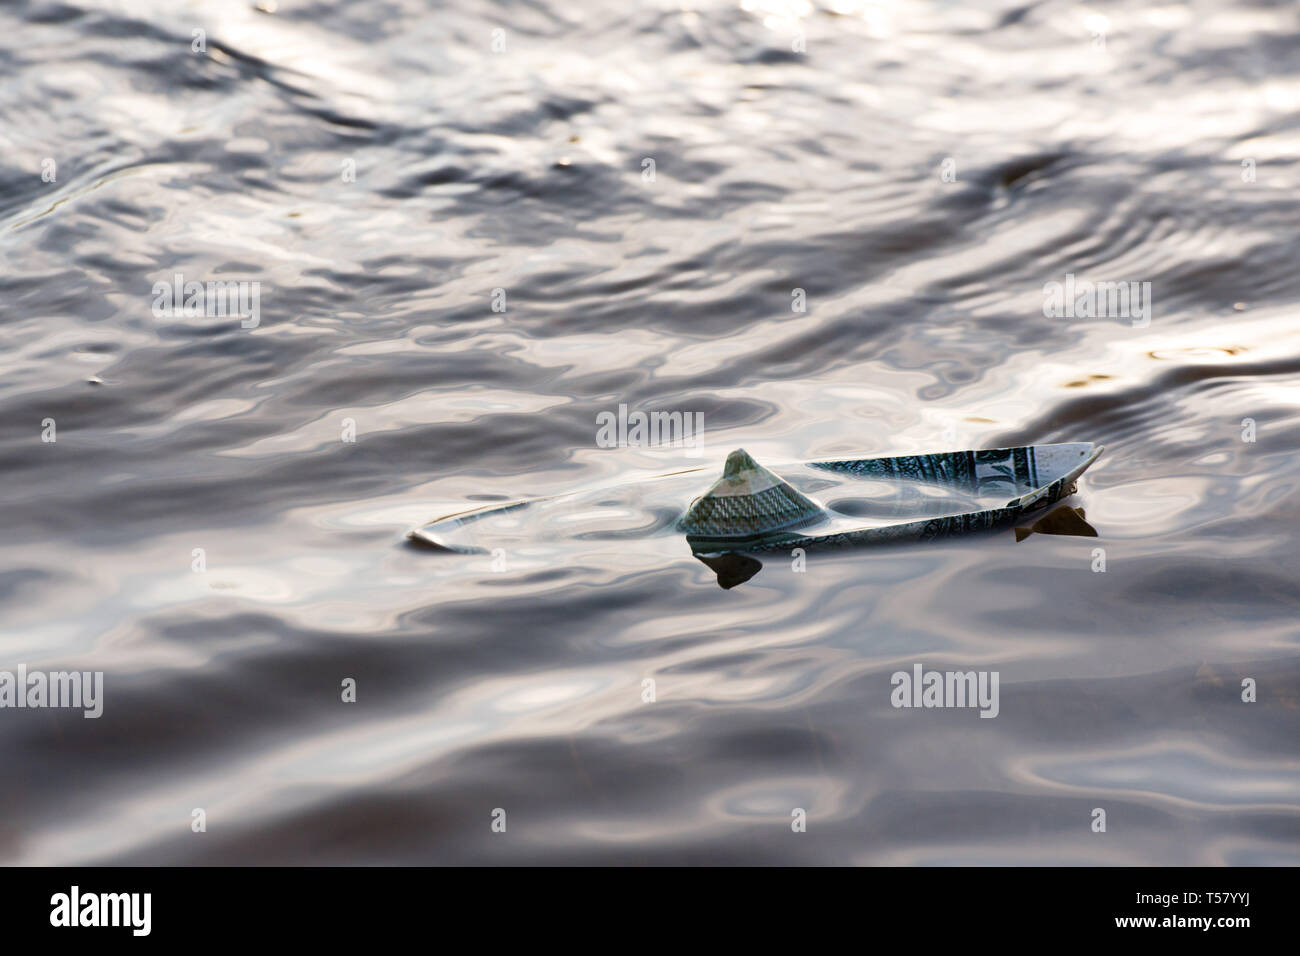 Una barca di carta da un dollaro è in pericolo. Il dollaro è che affonda nell'acqua. Immagine simbolica. Foto Stock